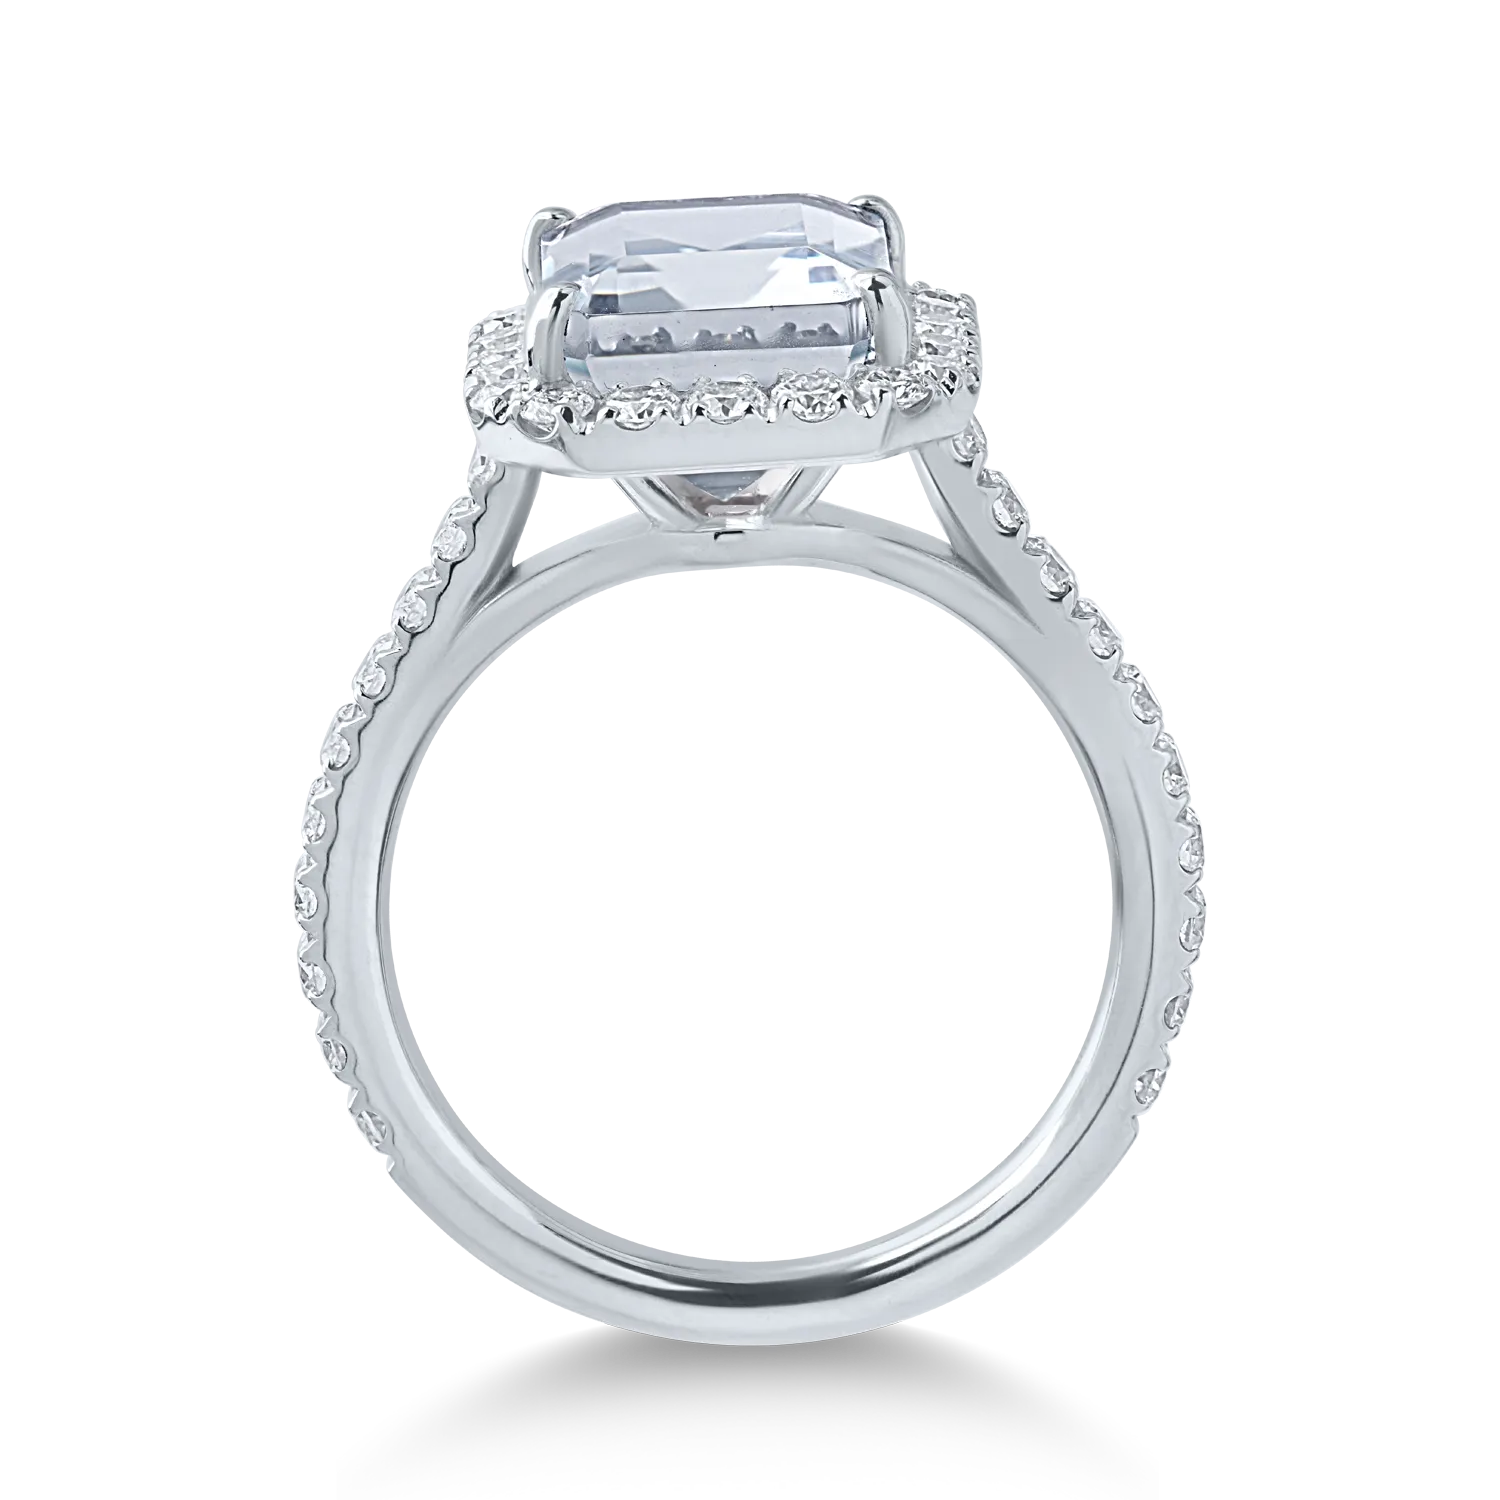 Fehérarany gyűrű 3.78ct akvamarinnal és 0.98ct gyémántokkal